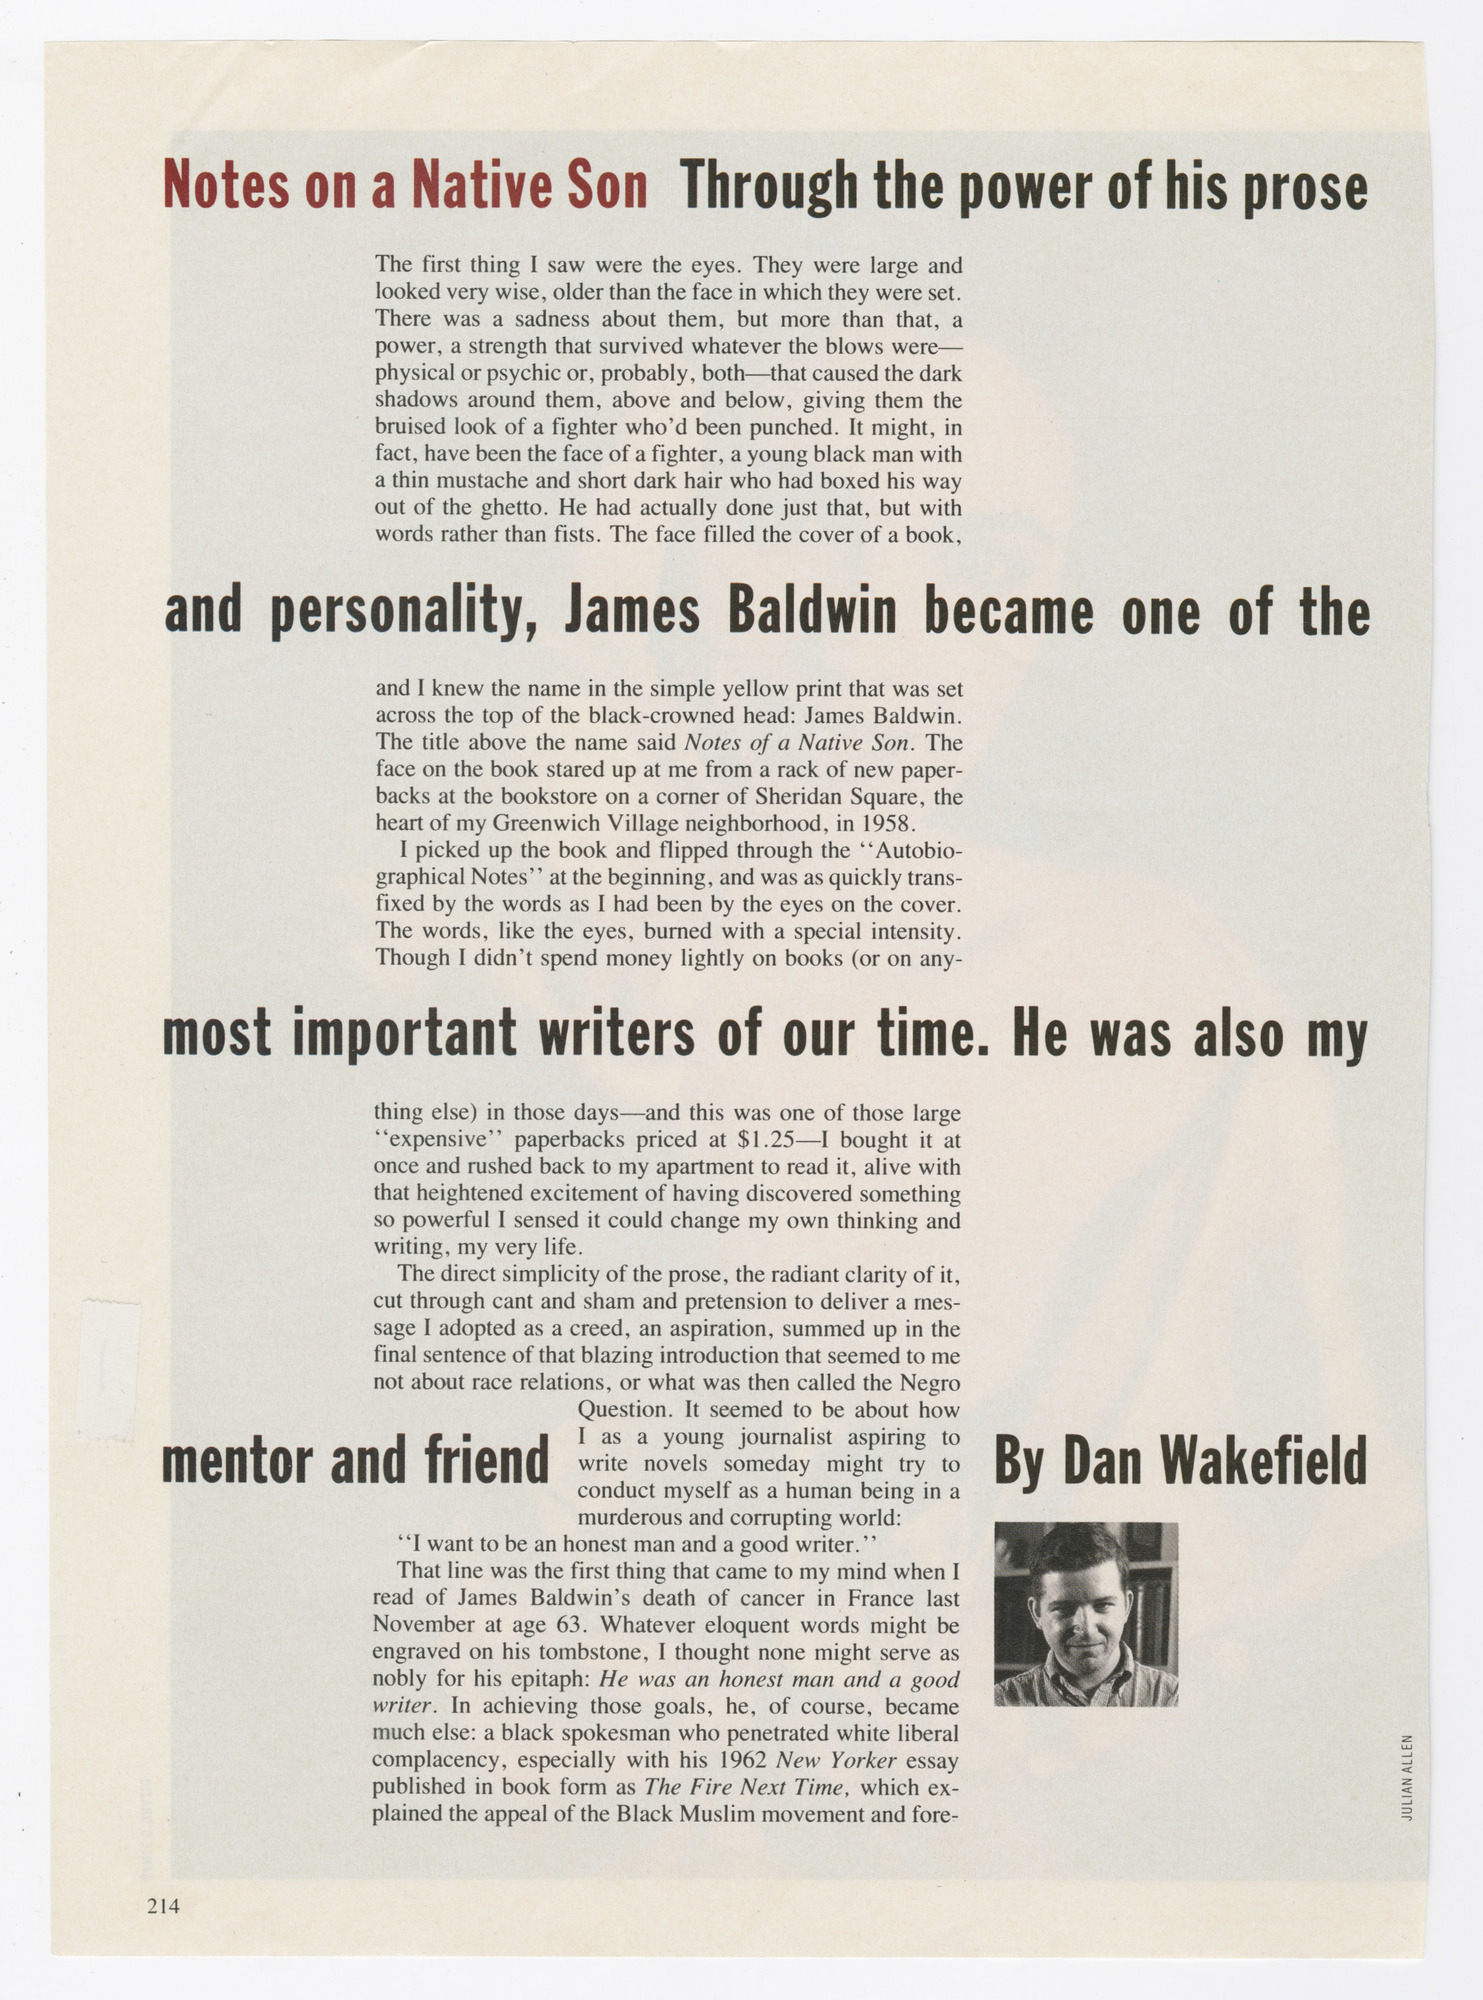 “James Baldwin, Friend and Mentor,” GQ, August 1988.